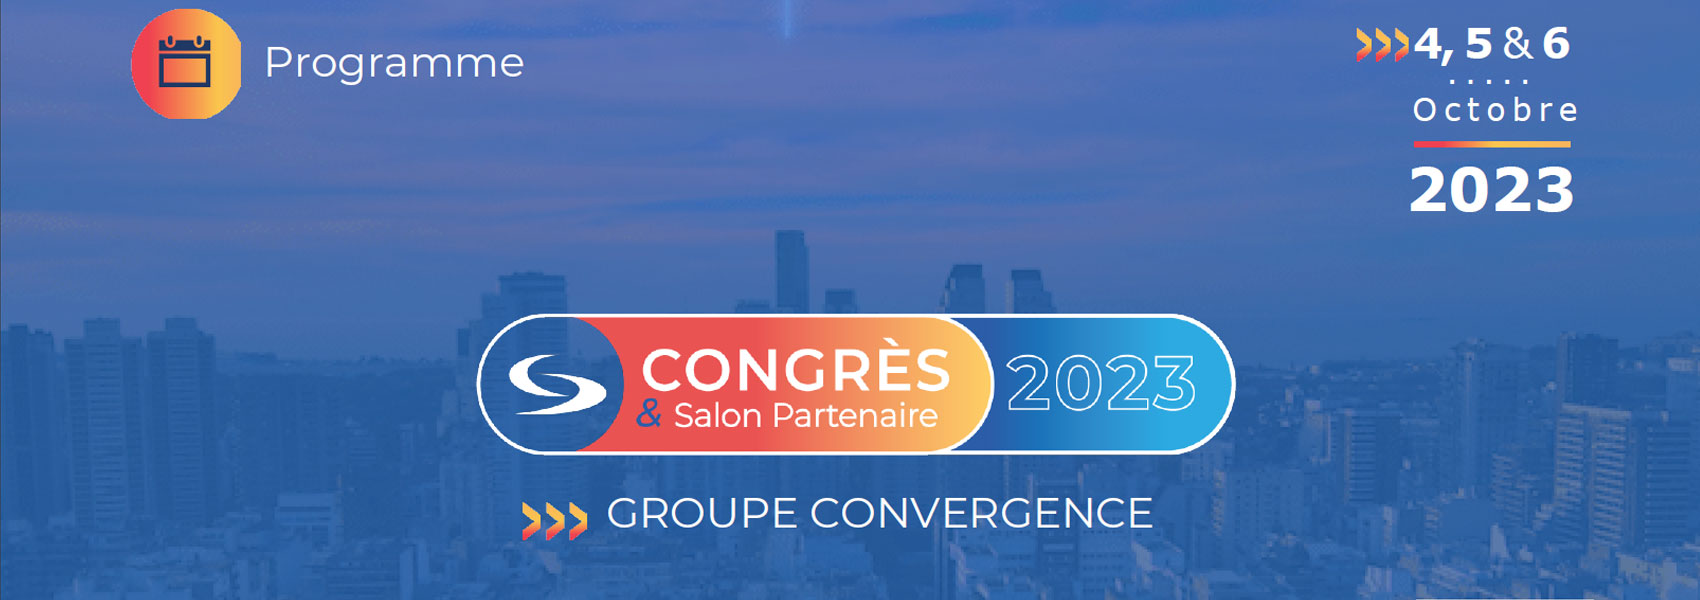 congres_2023_convergence